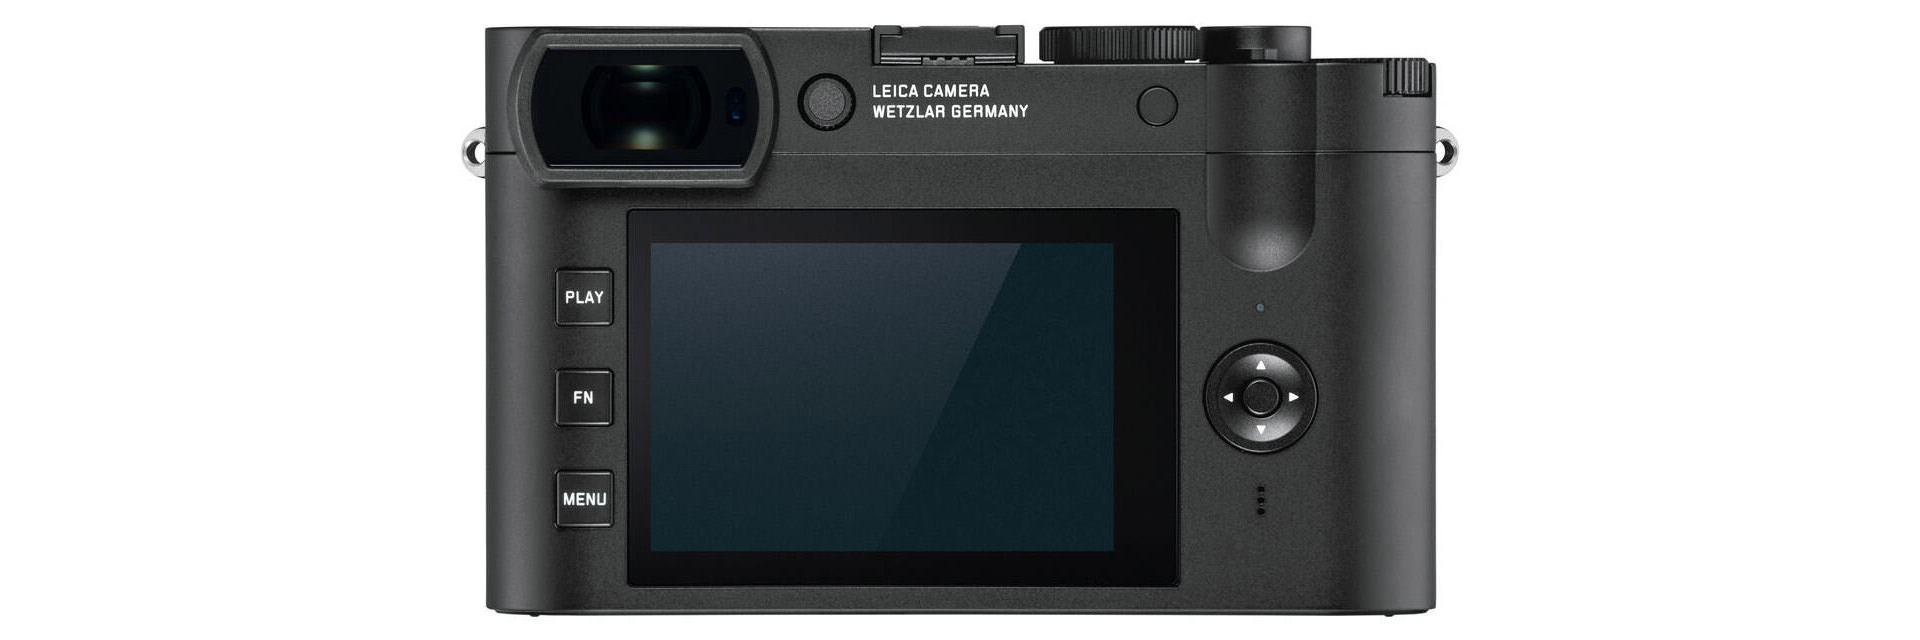 پنل پشتی لایکا کیو 2 مونوکروم / Leica Q2 Monochrom نمایشگر ال سی دی